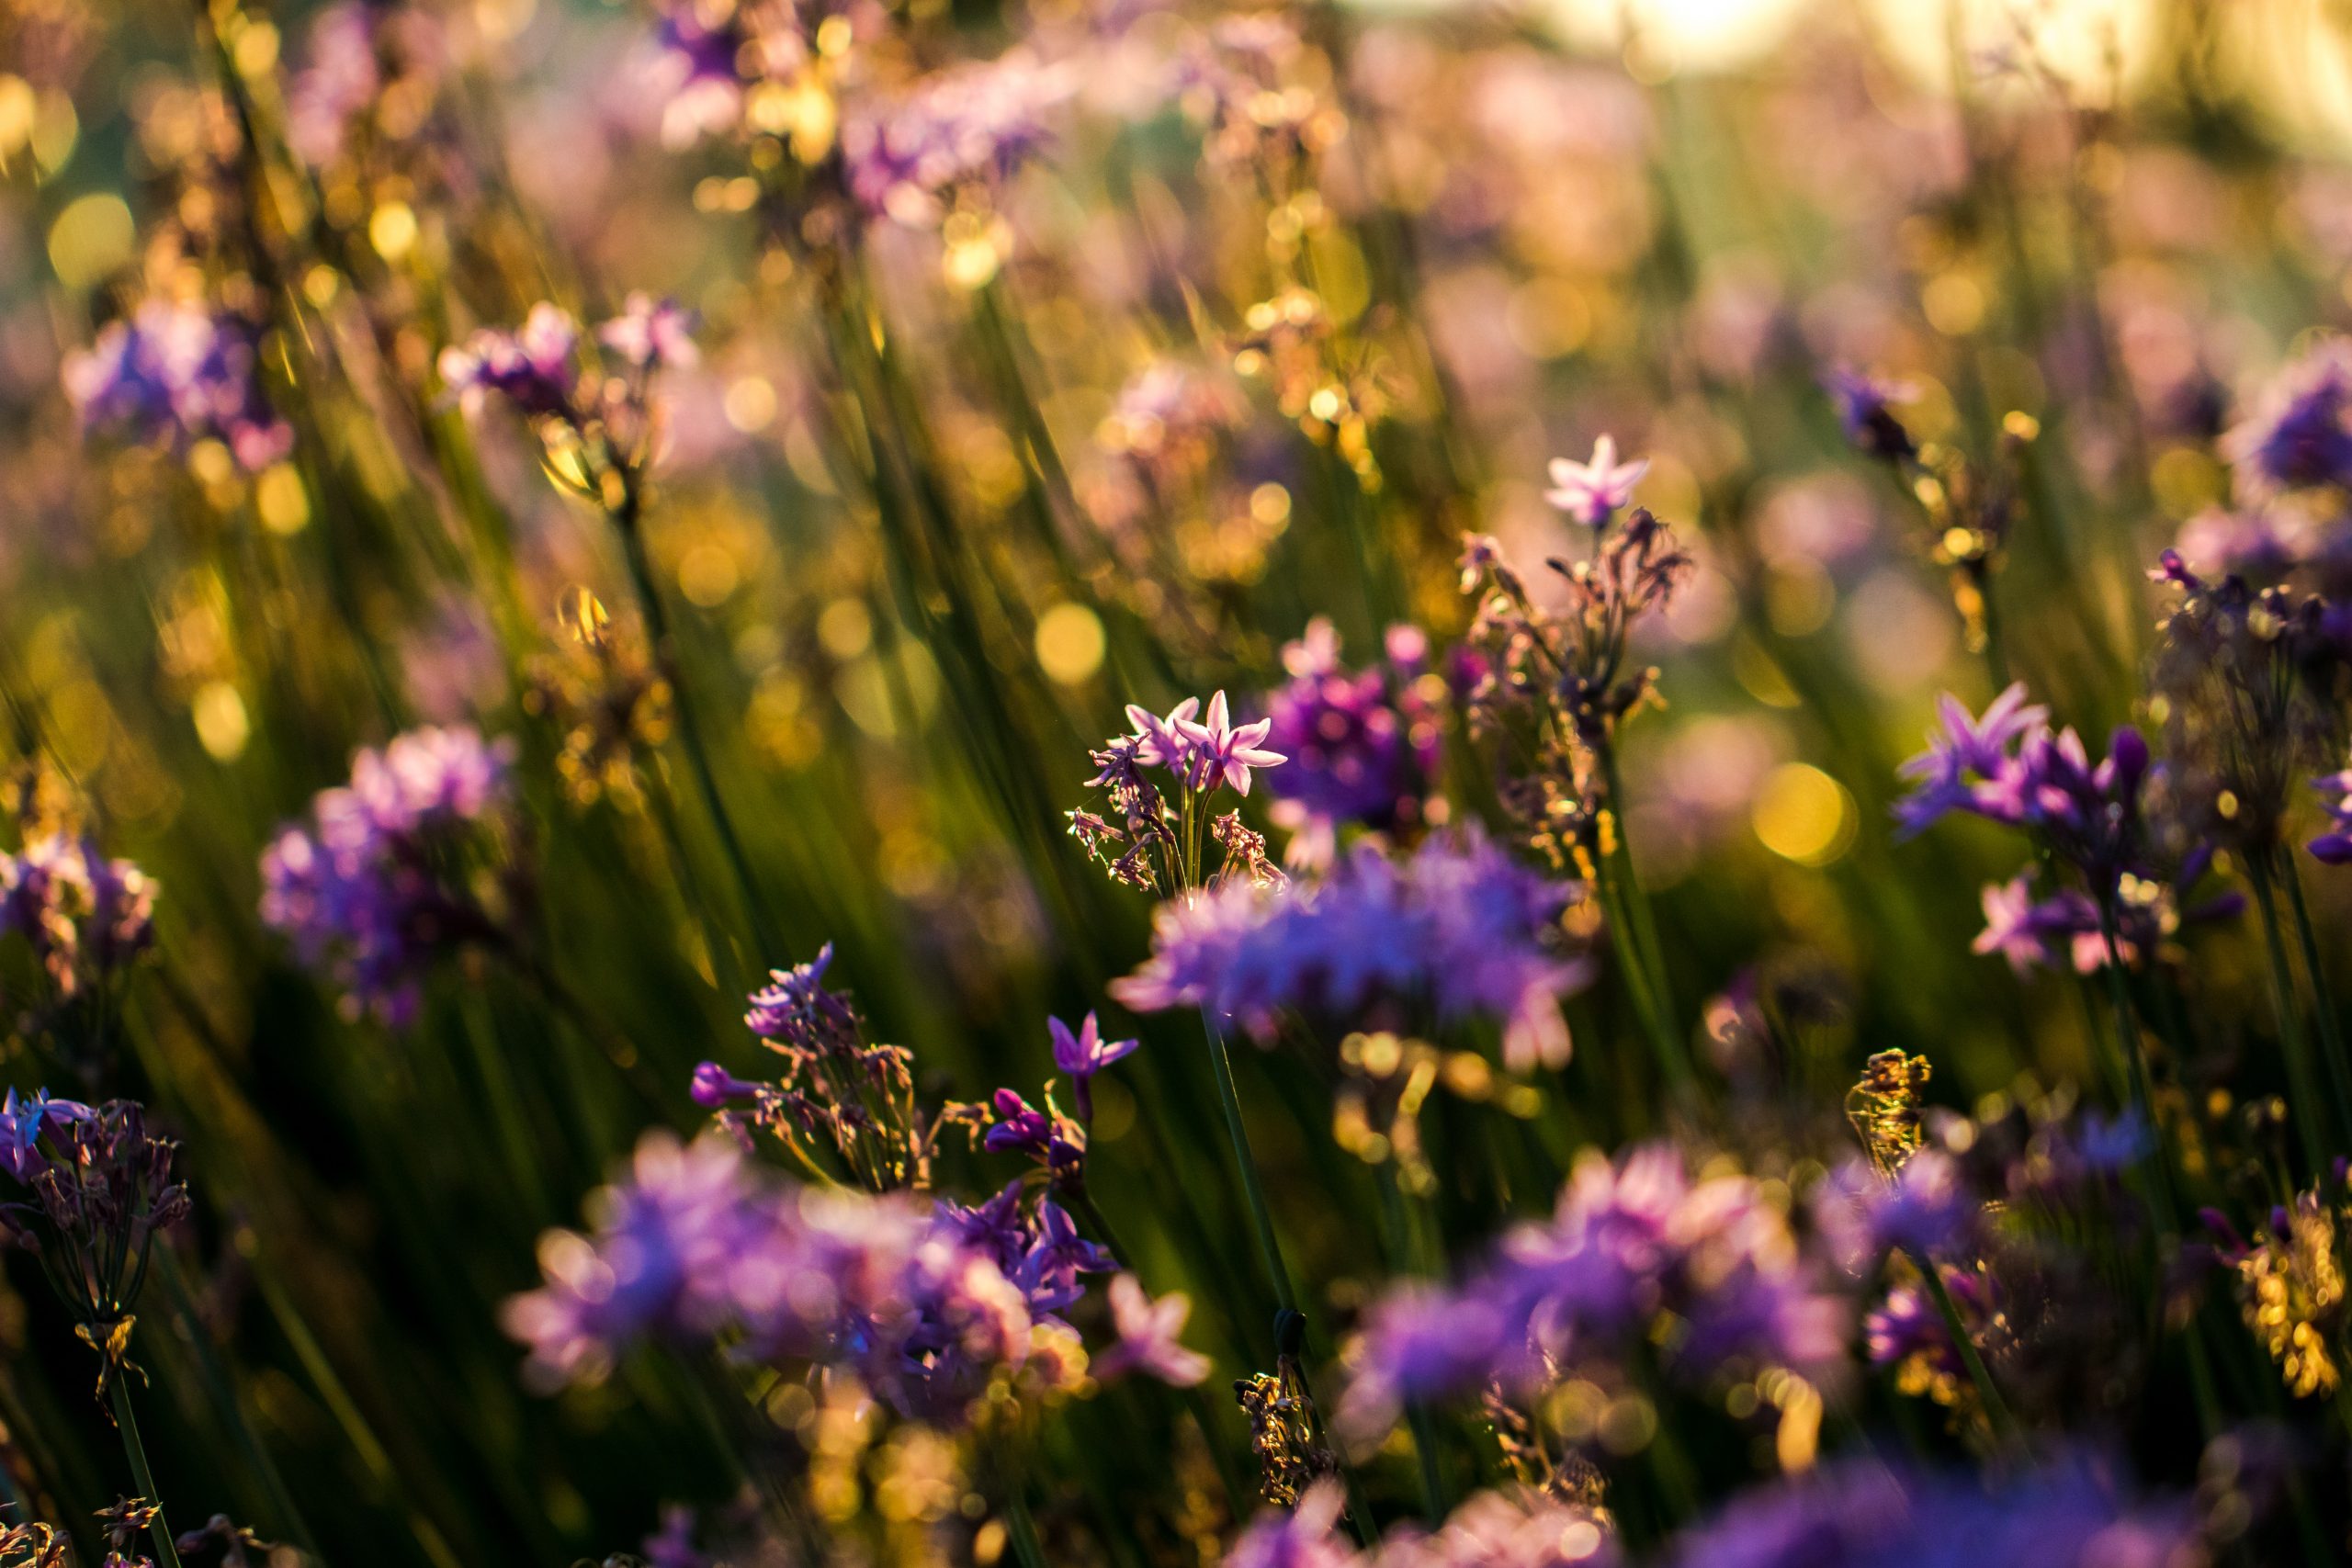 Photographie en gros plan de fleurs sauvages d'un violet éclatant poussant dans un champ. Le soleil levant baigne le champ de fleurs, leur donnant un éclat doré.